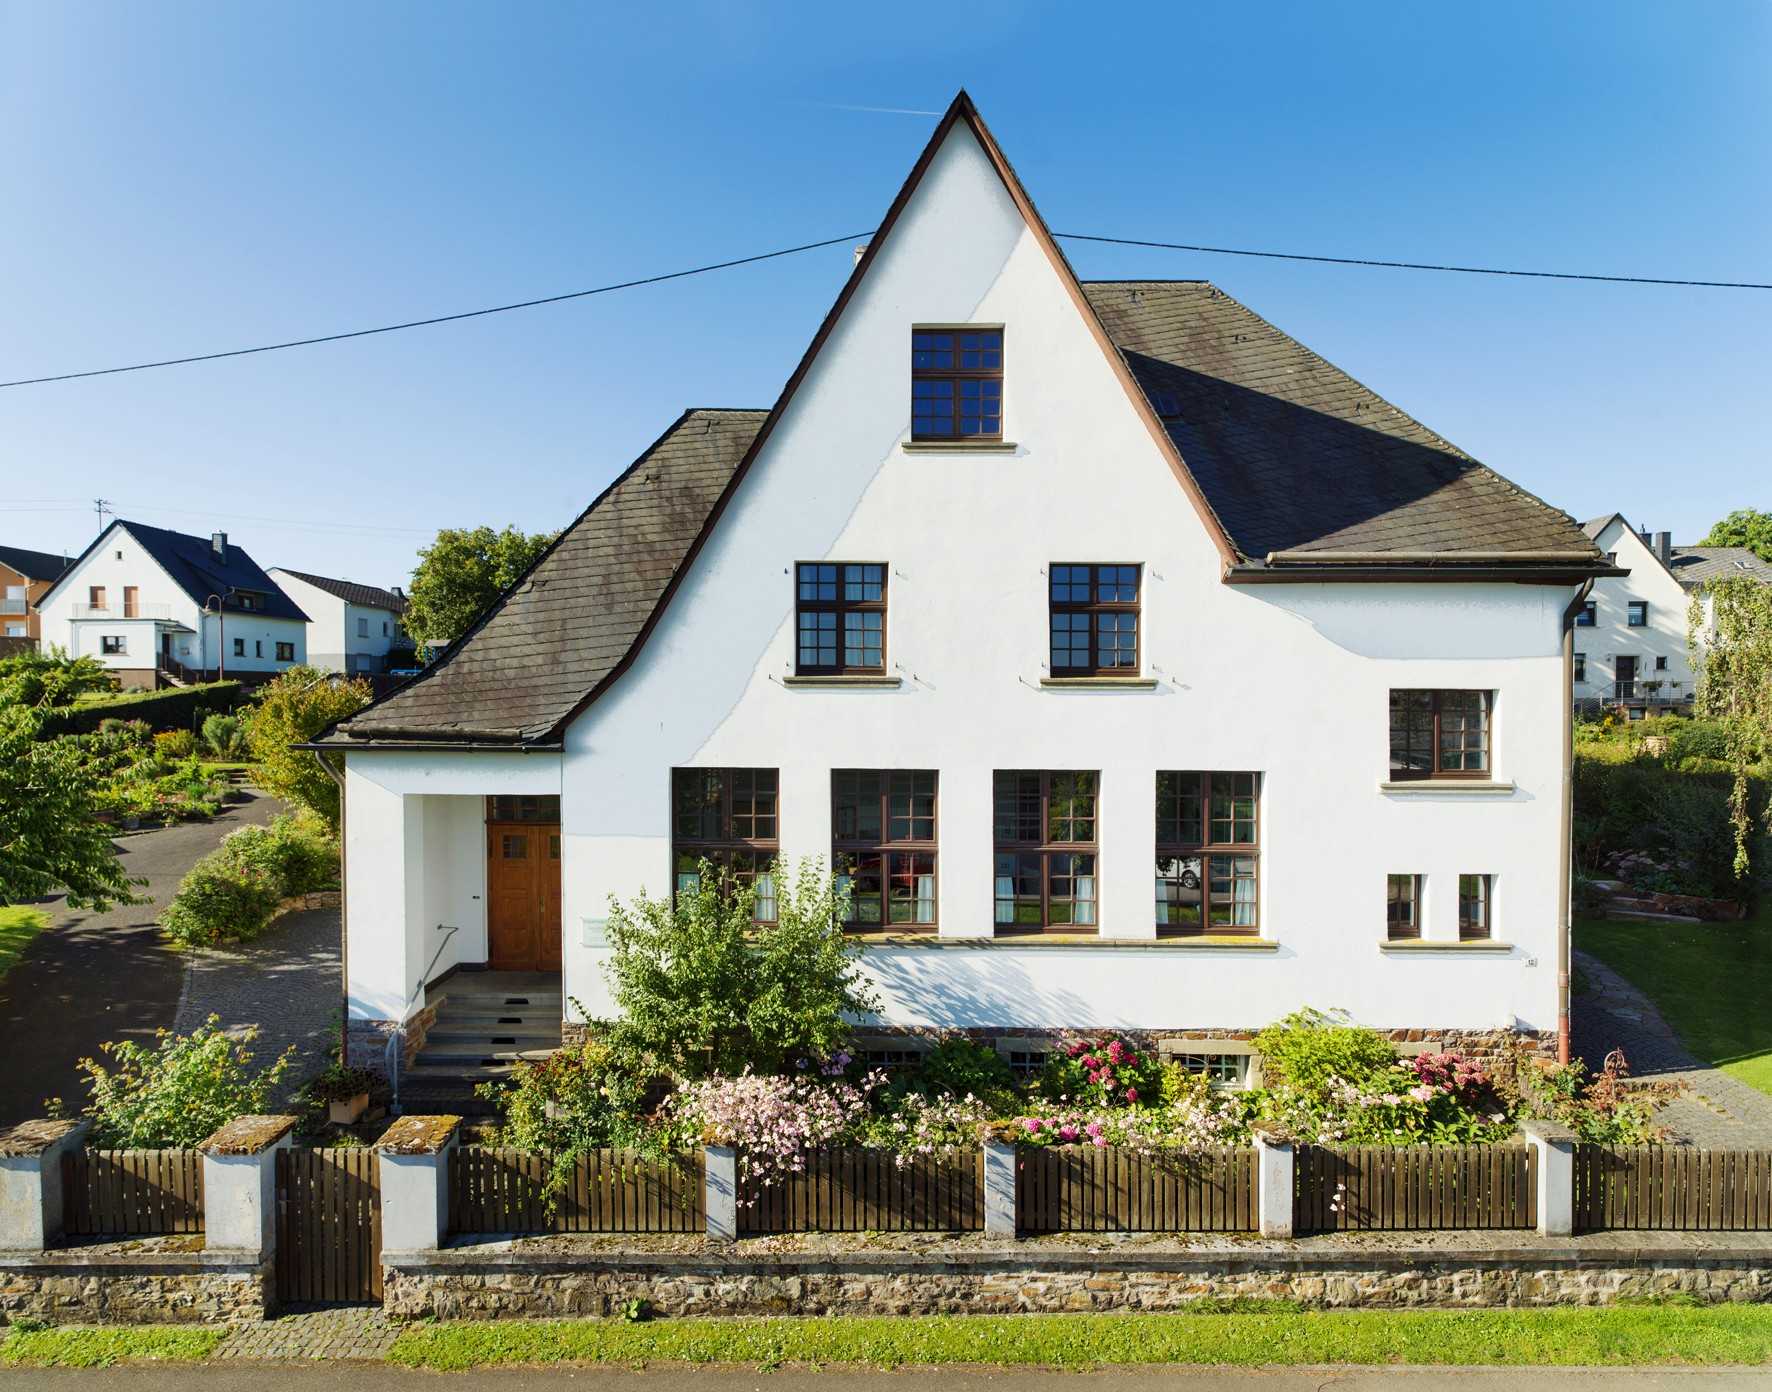 Images Uitzonderlijk historisch huis in de Hunsrück vlakbij de Benelux